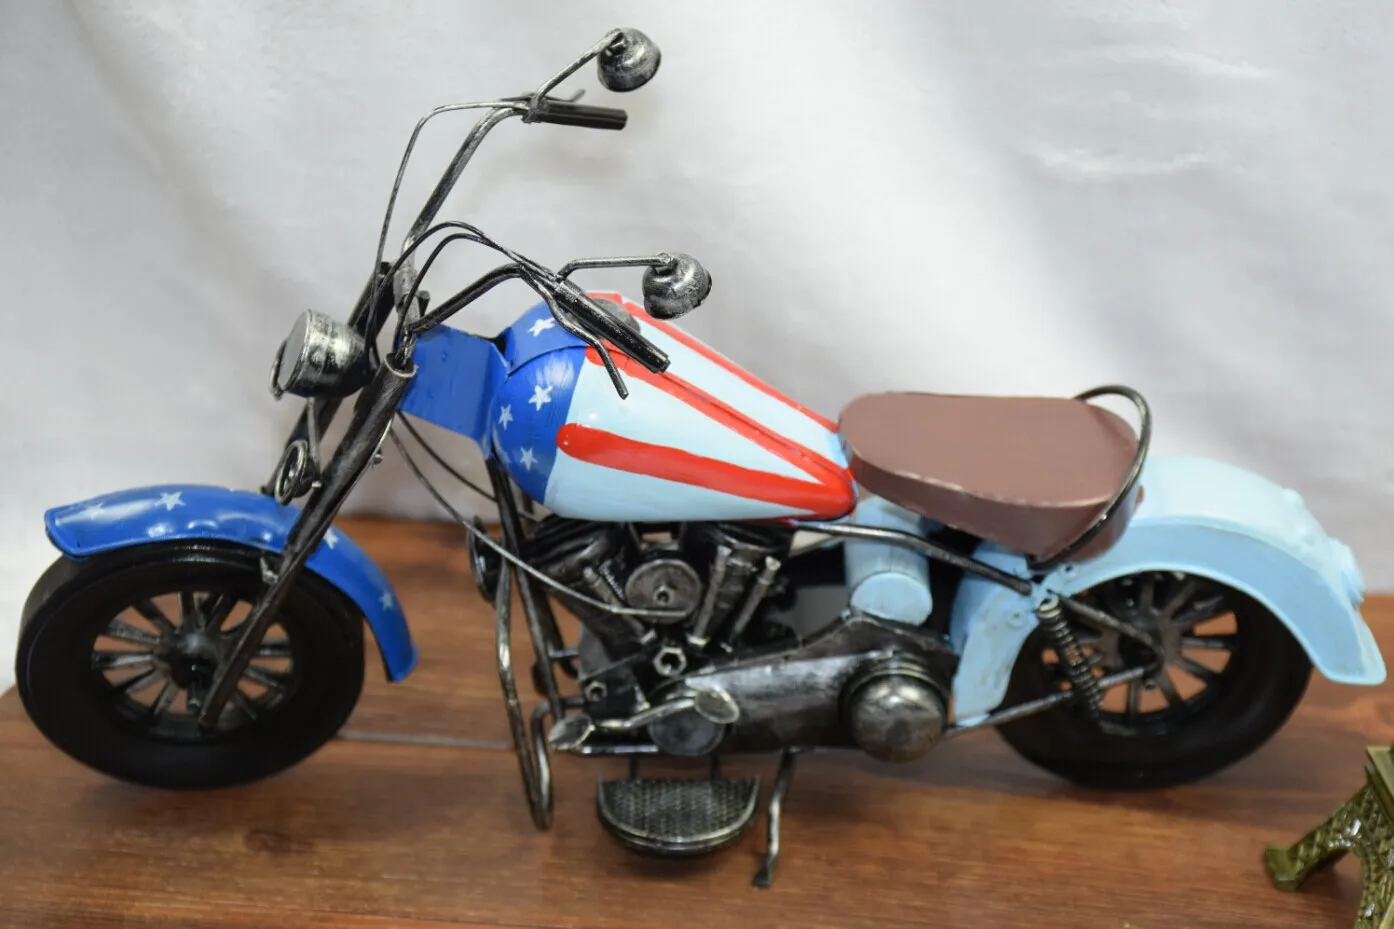 Giocattolo auto modello pressofuso in motocicletta retrò con bandiera americana, opera d'arte artigianale classica, regalo ragazzo festa di compleanno bambini, collezionismo, decorazione